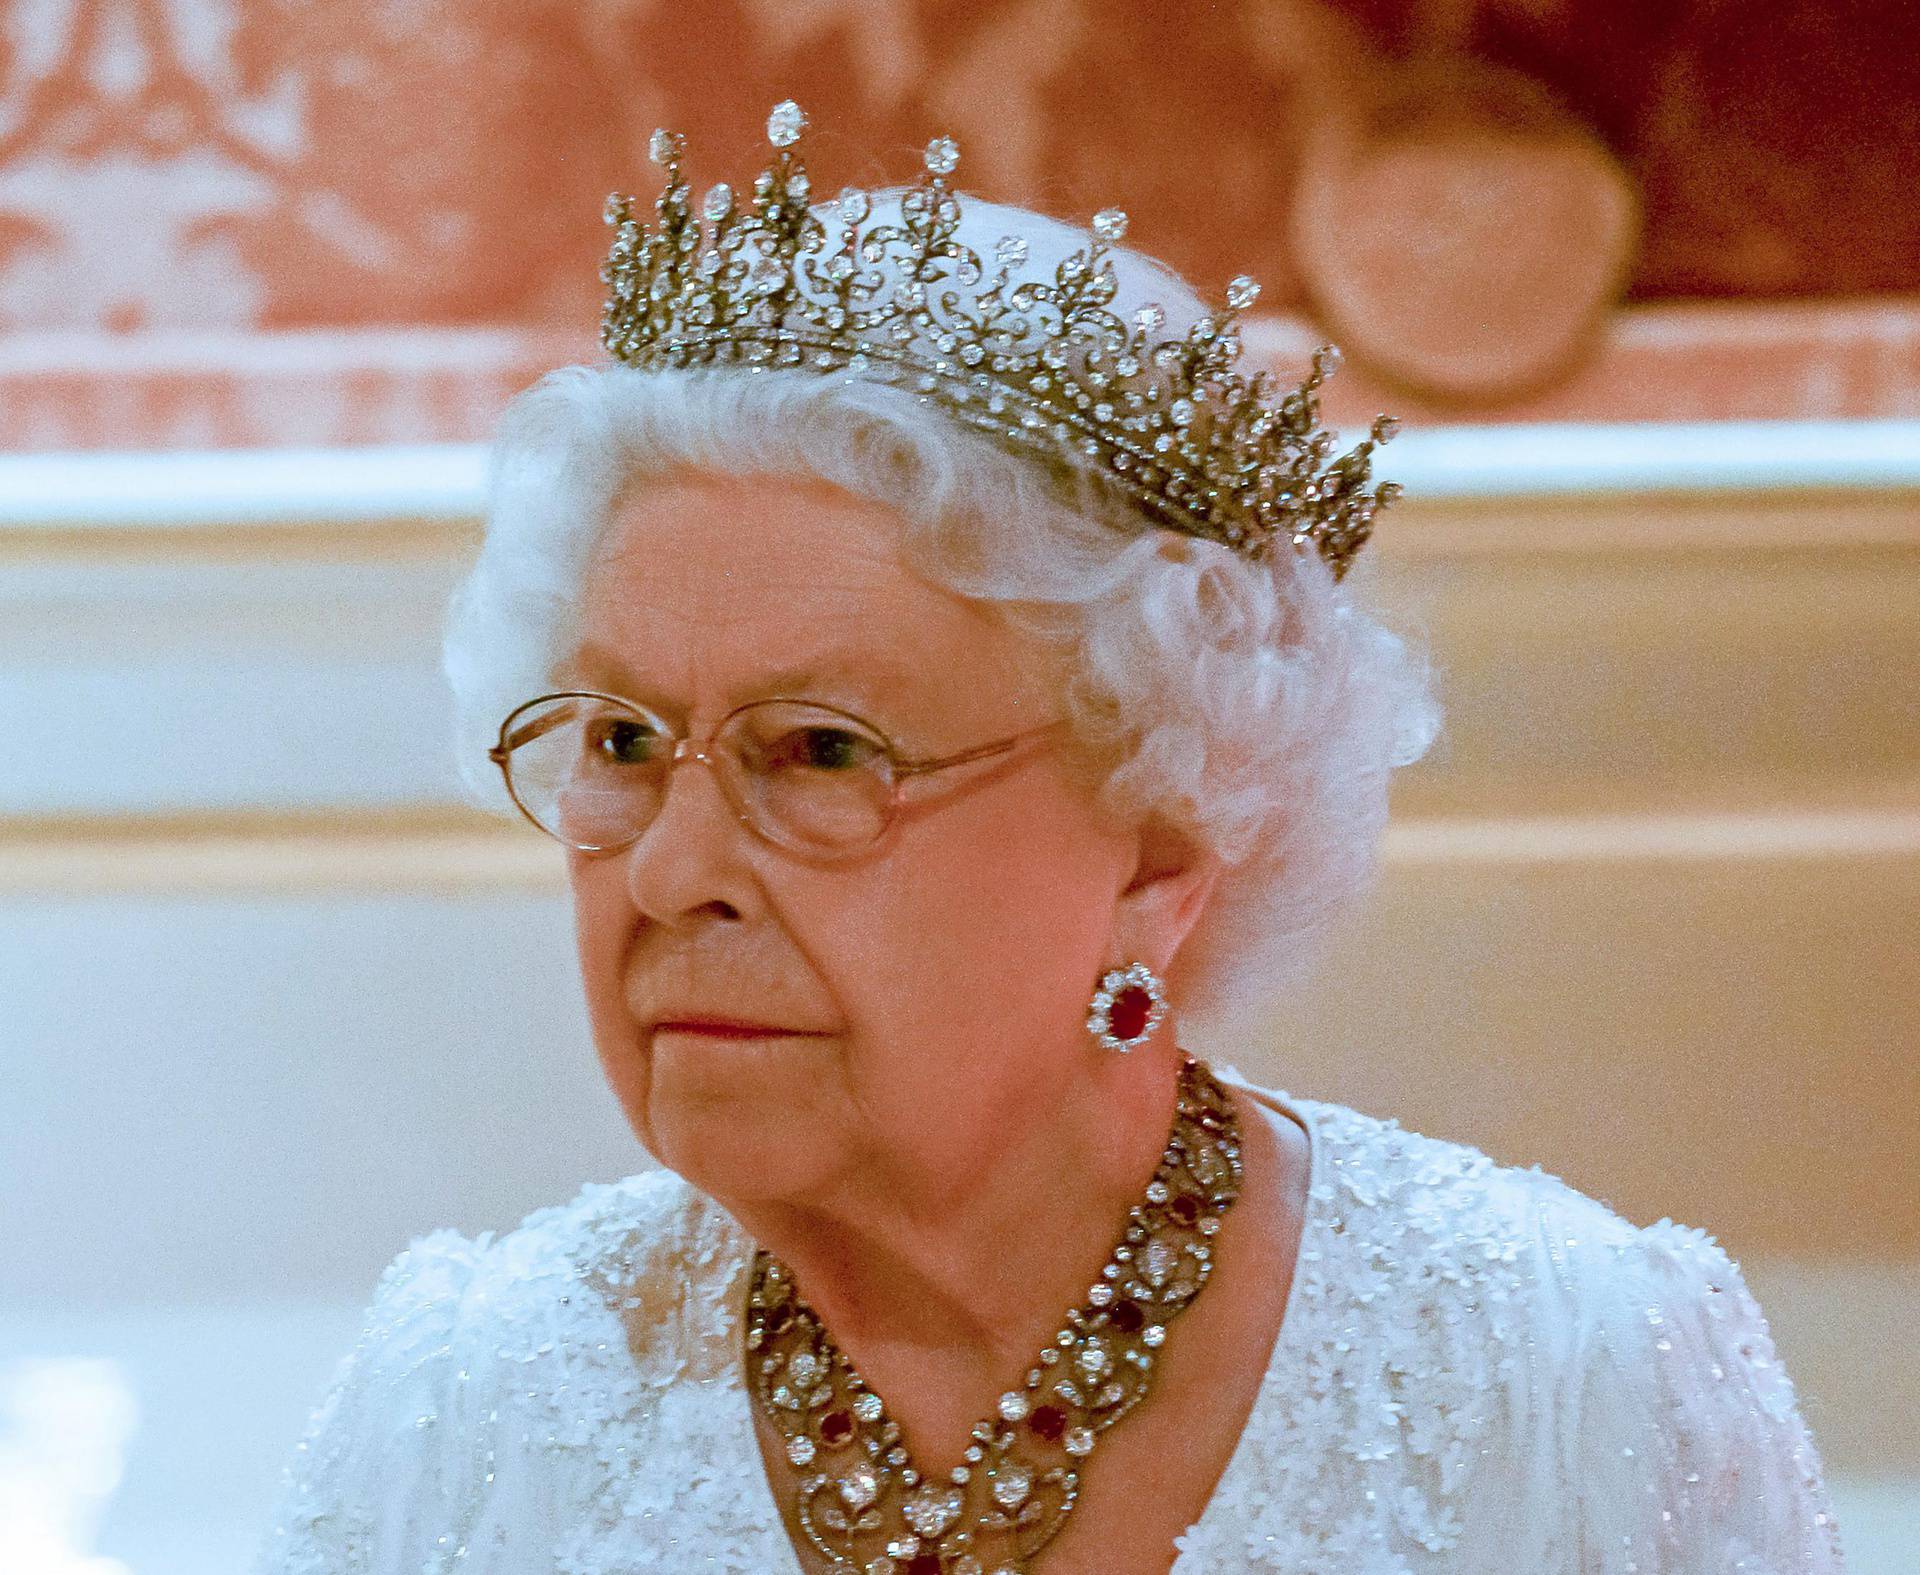 'Procurili' službeni dokumenti o protokolu u slučaju smrti kraljice: 'Pokrenuli smo istragu'